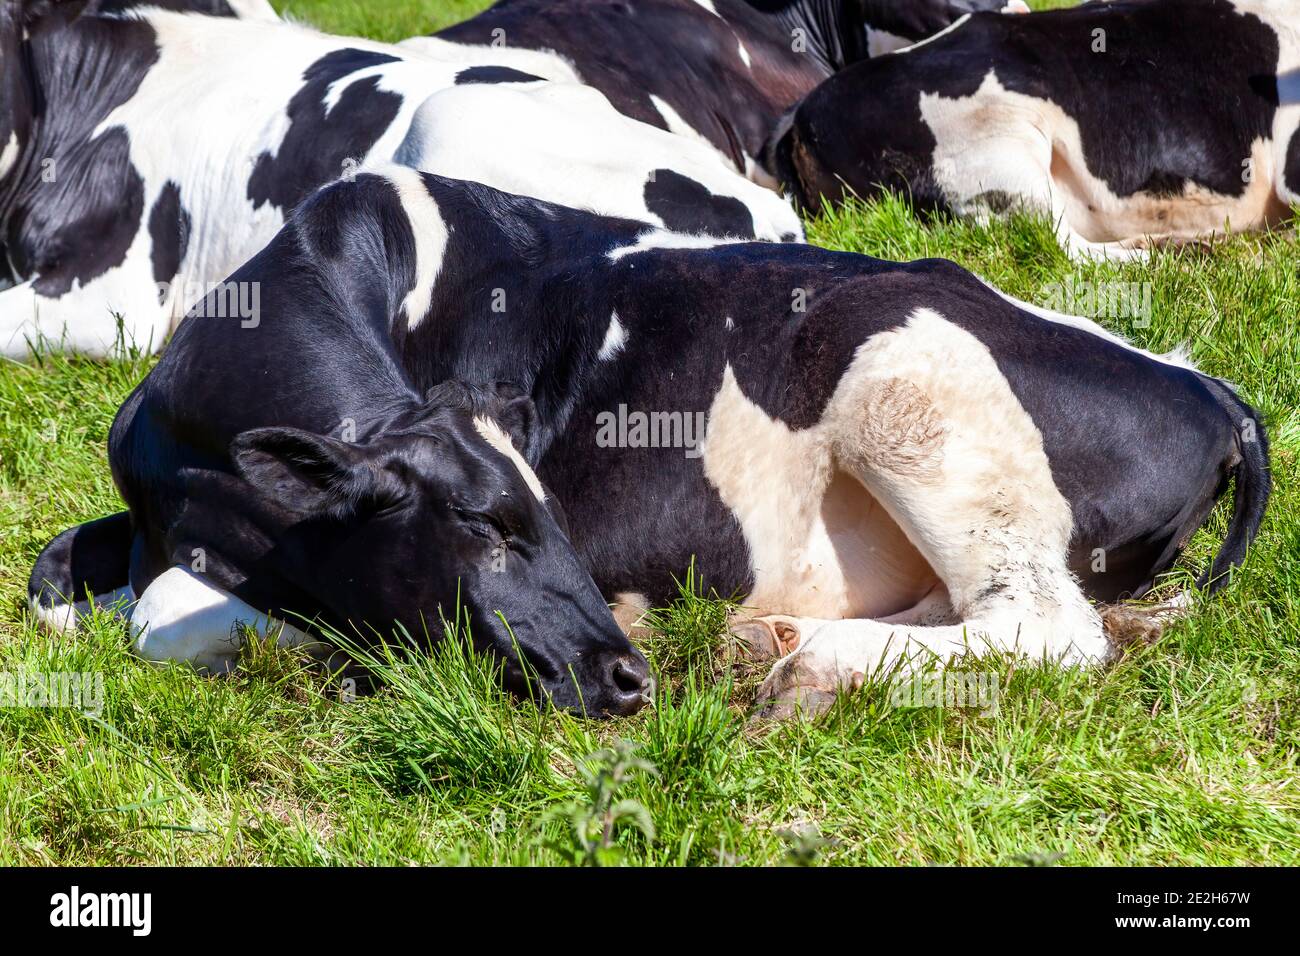 Holstein vache fronésienne se coucher dans une laiterie agricole champ de pâturage de bétail avec une image de stock de ciel bleu Banque D'Images